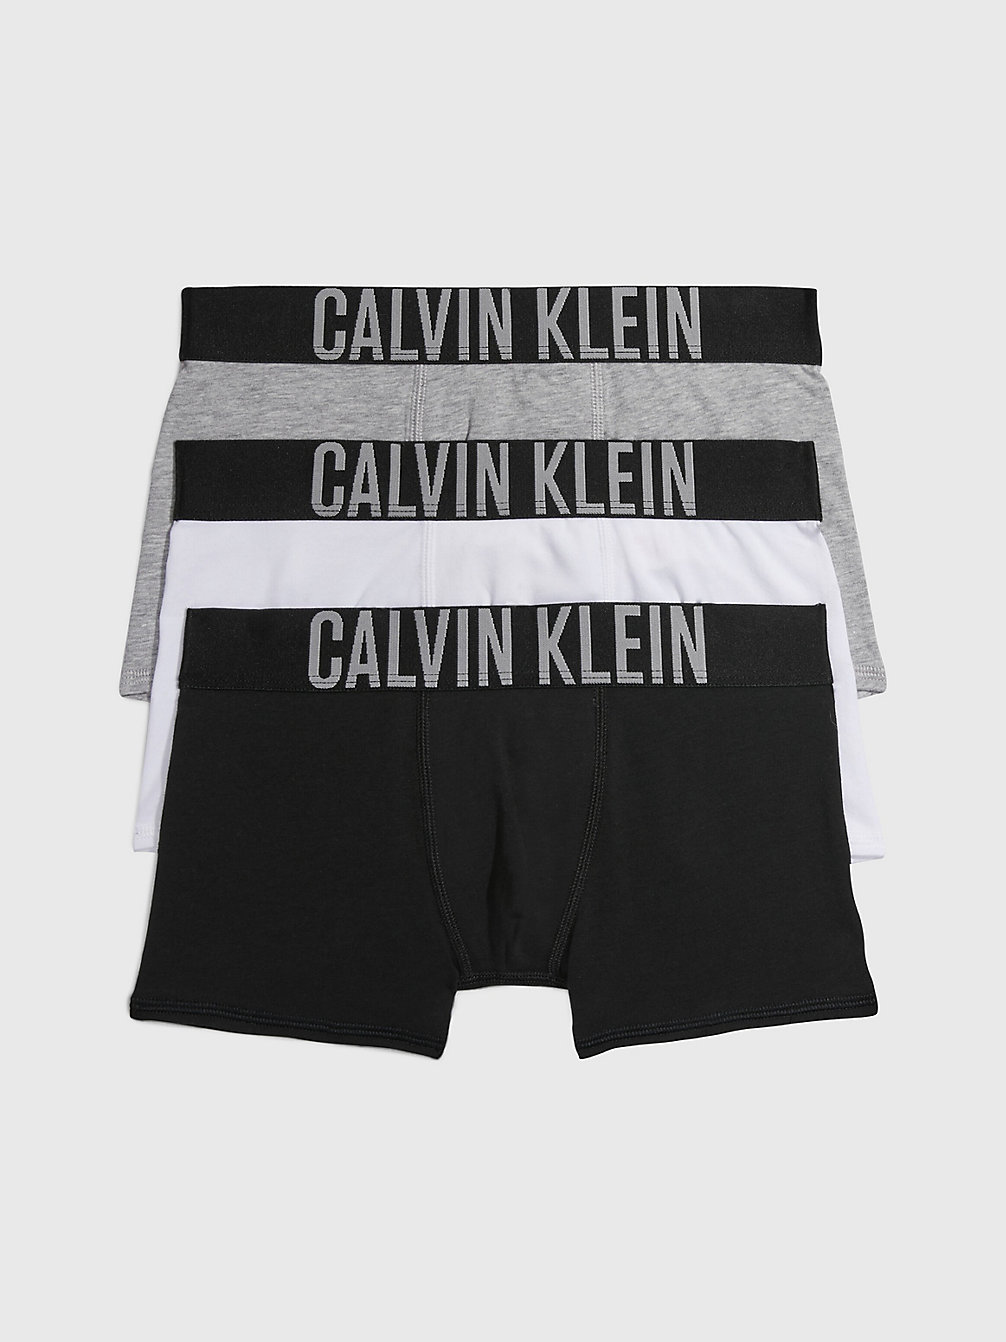 PVHBLACK/GREYHETHR/PVHWHITE 3er-Pack Boxershorts Für Jungen - Intense Power undefined Jungen Calvin Klein